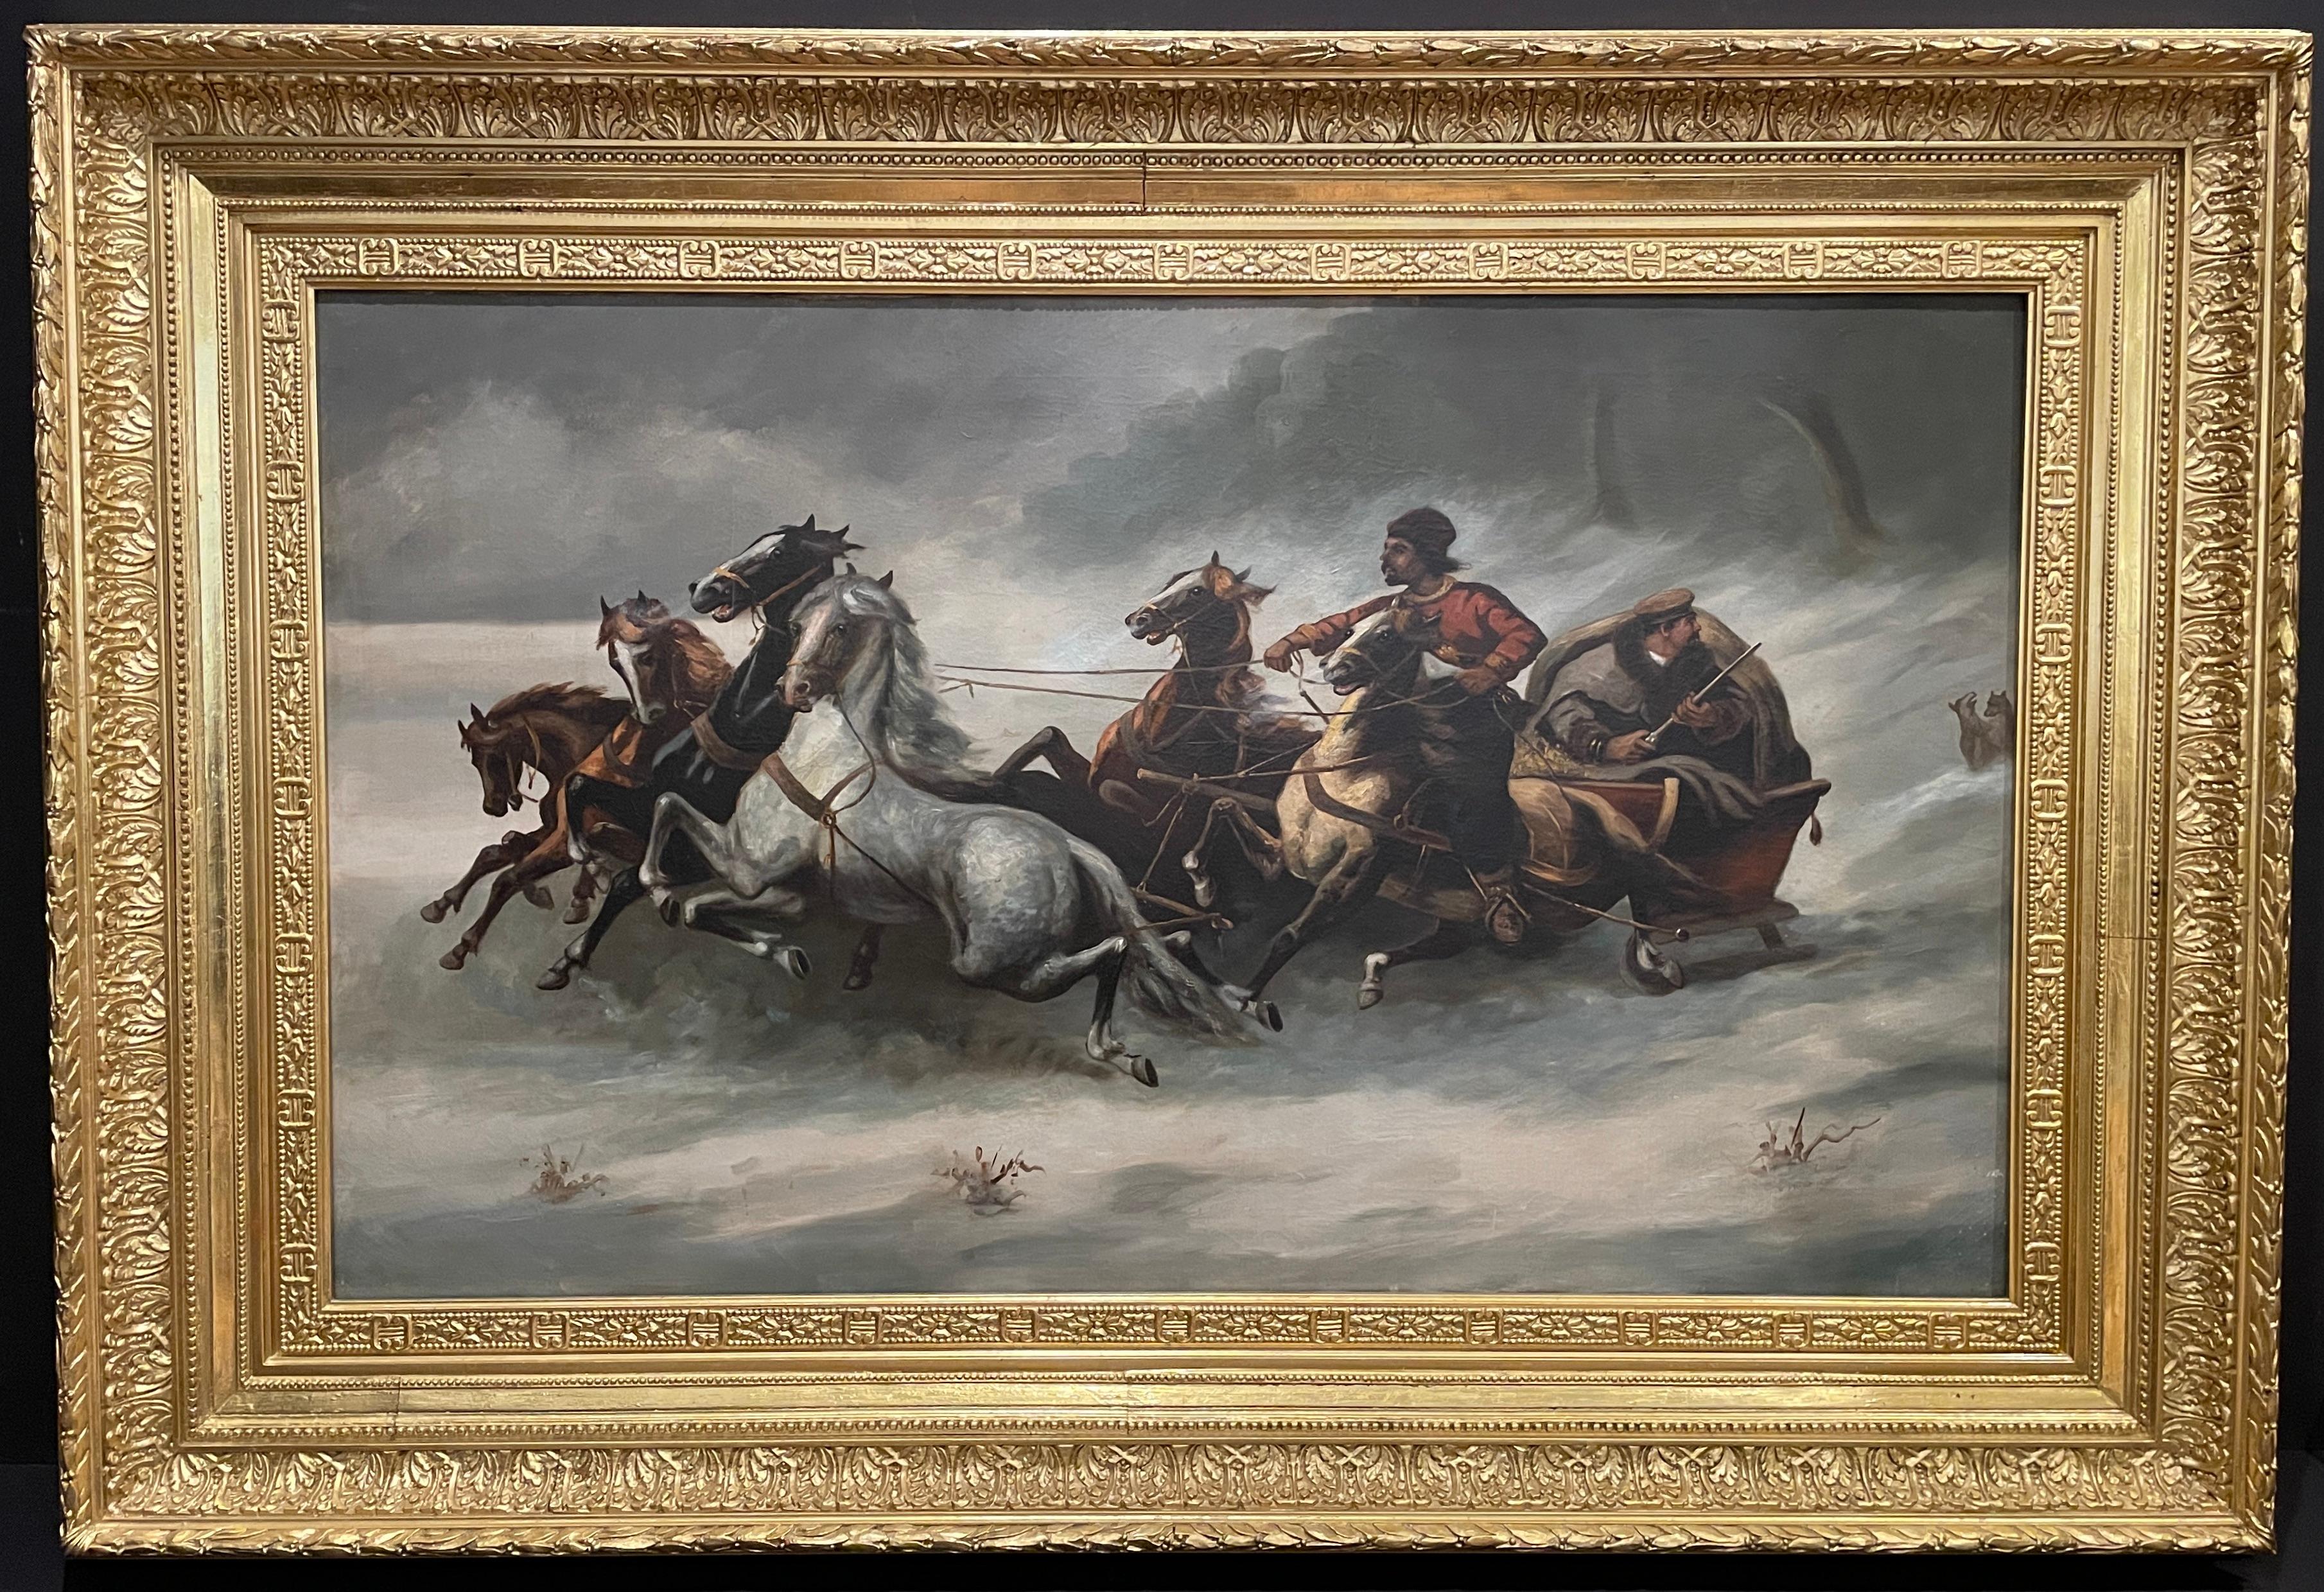 Impressionnante huile sur toile russe du 19e siècle, bien peinte, représentant une scène de chasse ou de poursuite avec une troïka tirée par 6 chevaux au pas. Un homme armé d'un fusil est assis dans le véhicule tandis qu'un autre contrôle